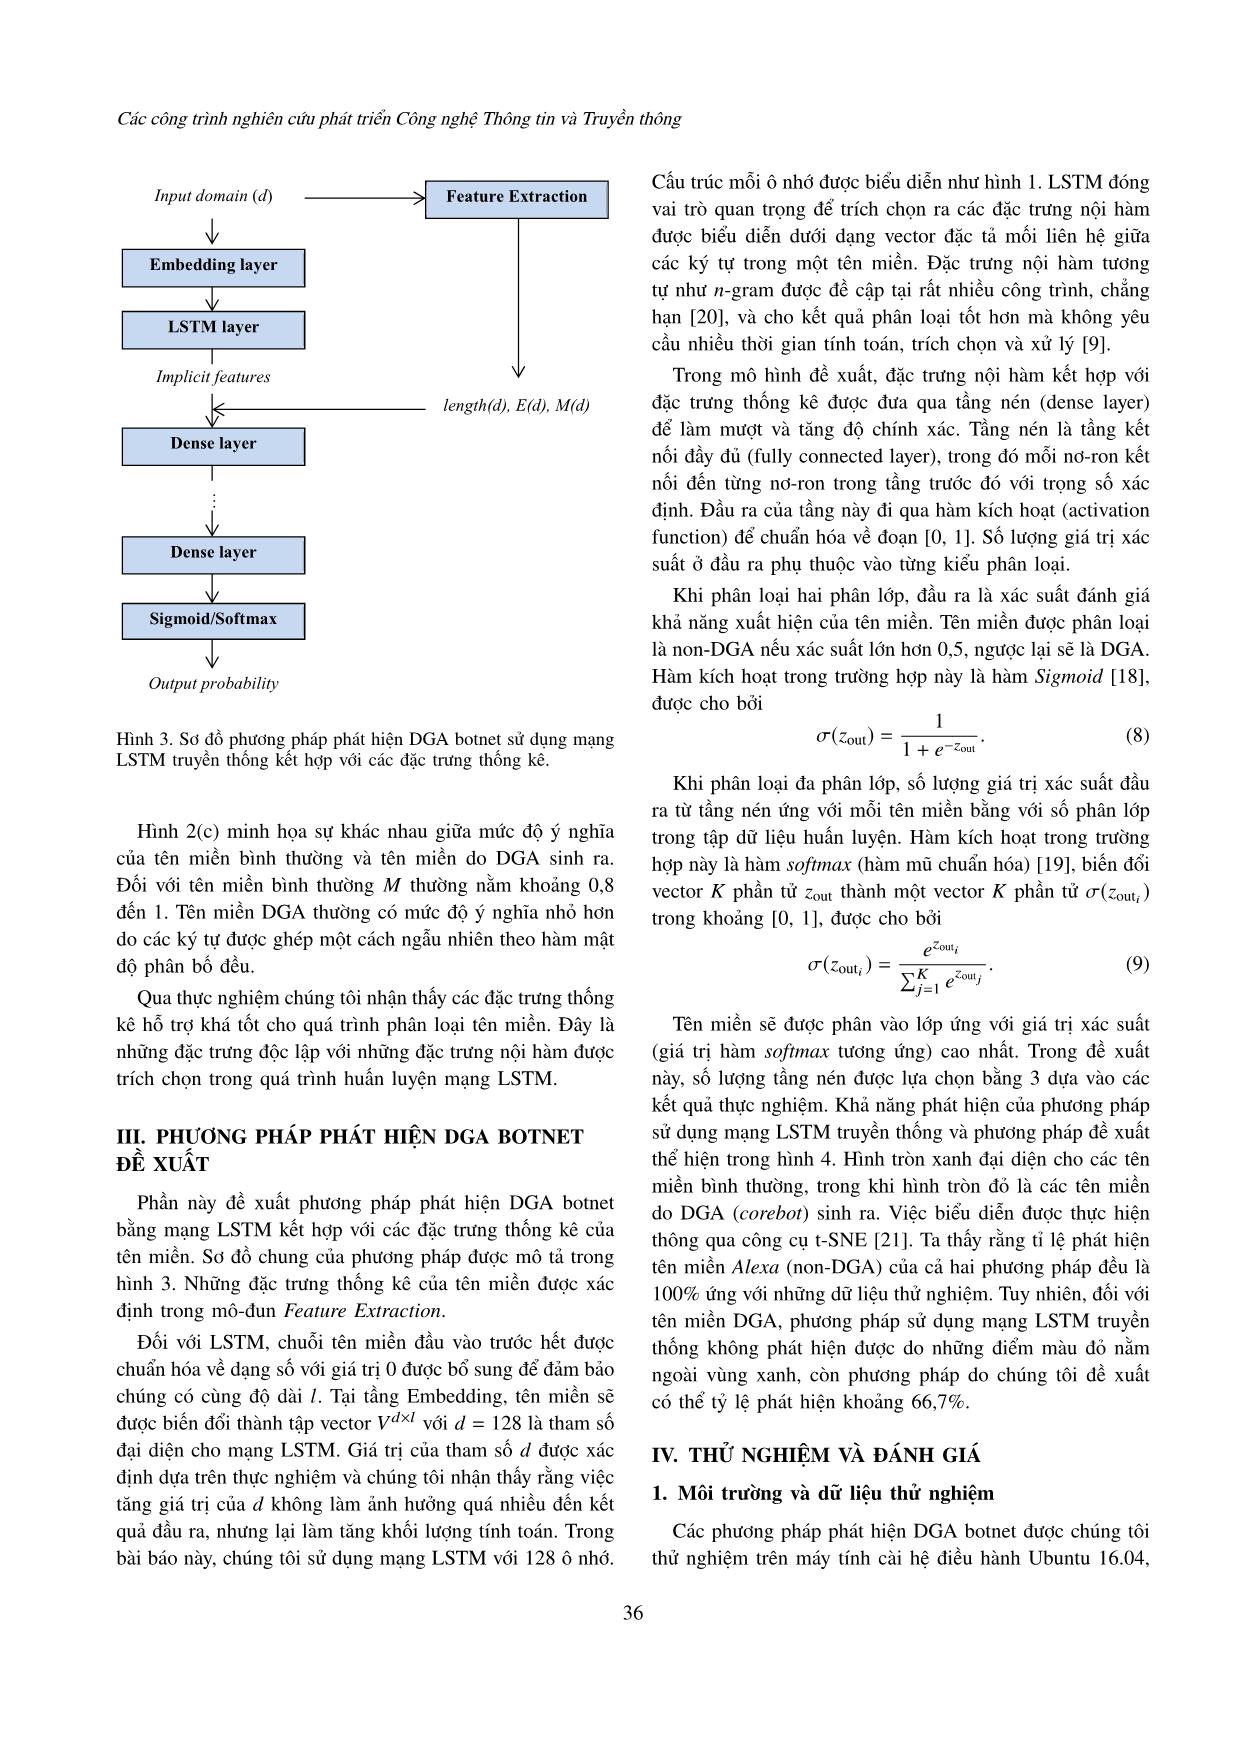 Phương pháp cải tiến LSTM dựa trên đặc trưng thống kê trong phát hiện DGA botnet trang 4